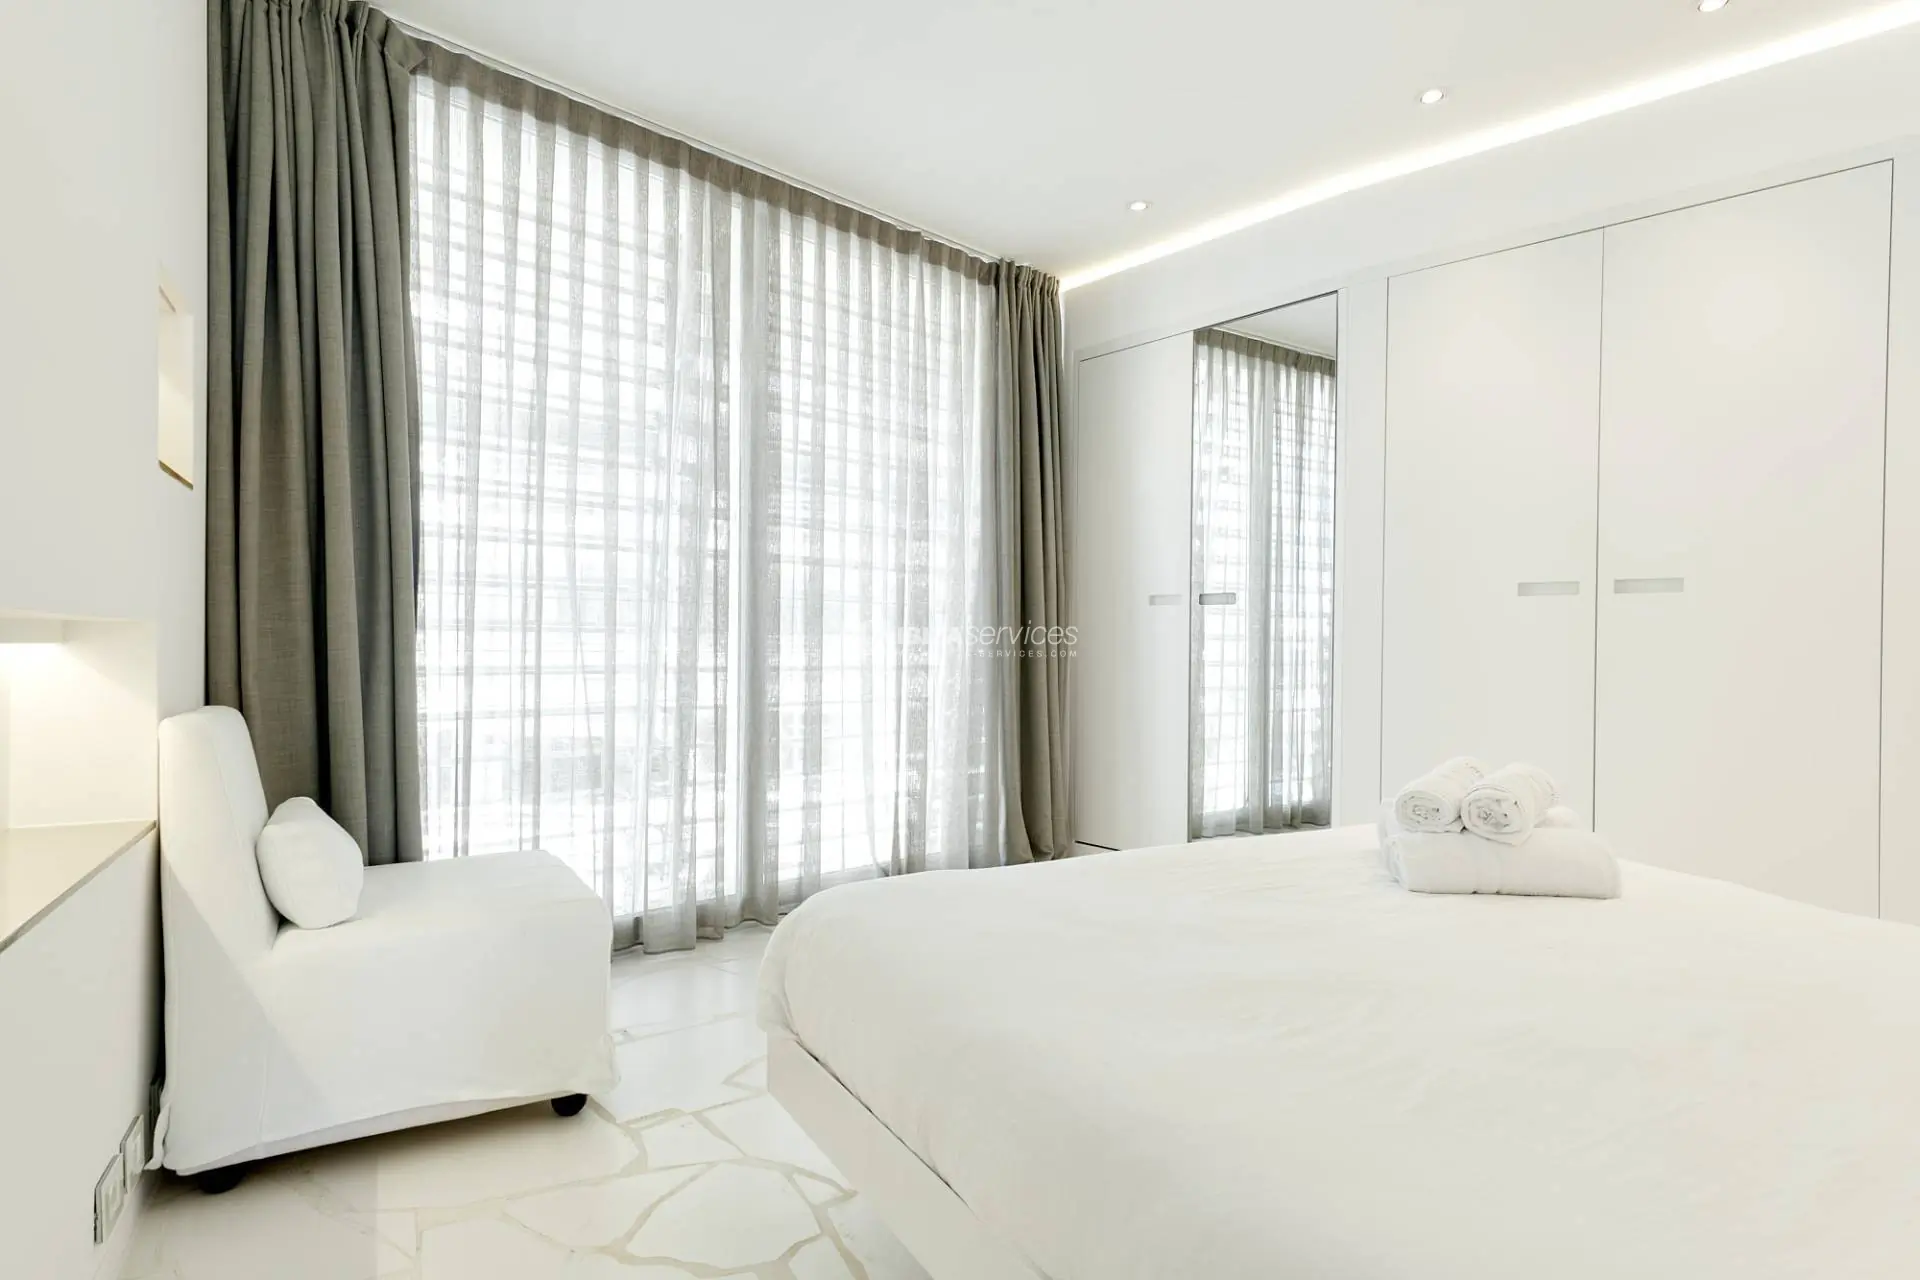 4051 Alquiler de apartamento de lujo de 1 dormitorio Las Boas de Ibiza.